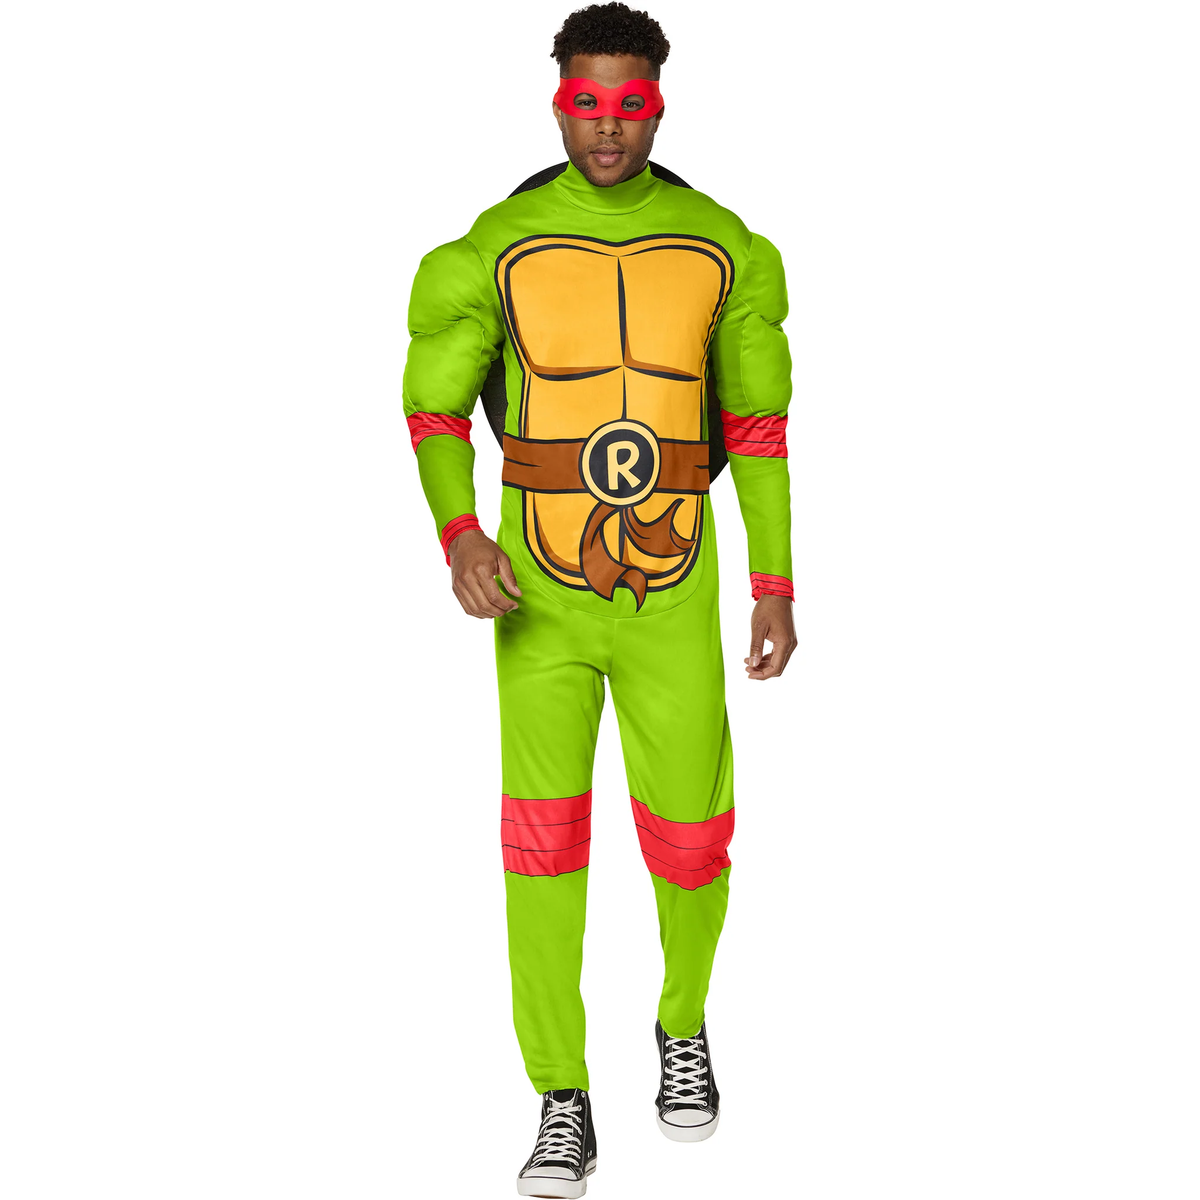 Teenage Mutant Ninja Turtles Raphael Adult Costume